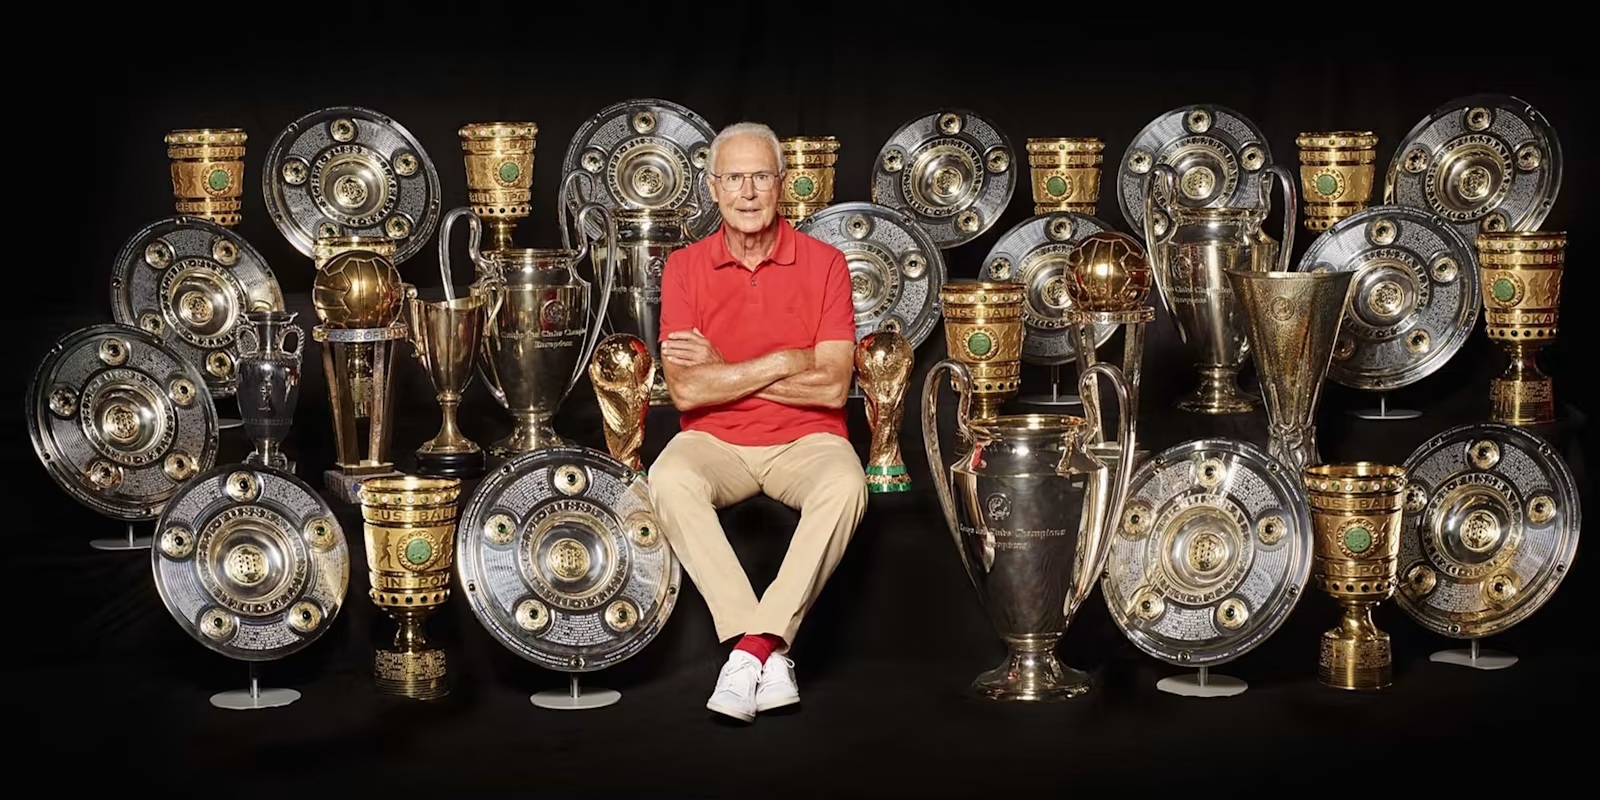 Títulos que ganó Franz Beckenbauer